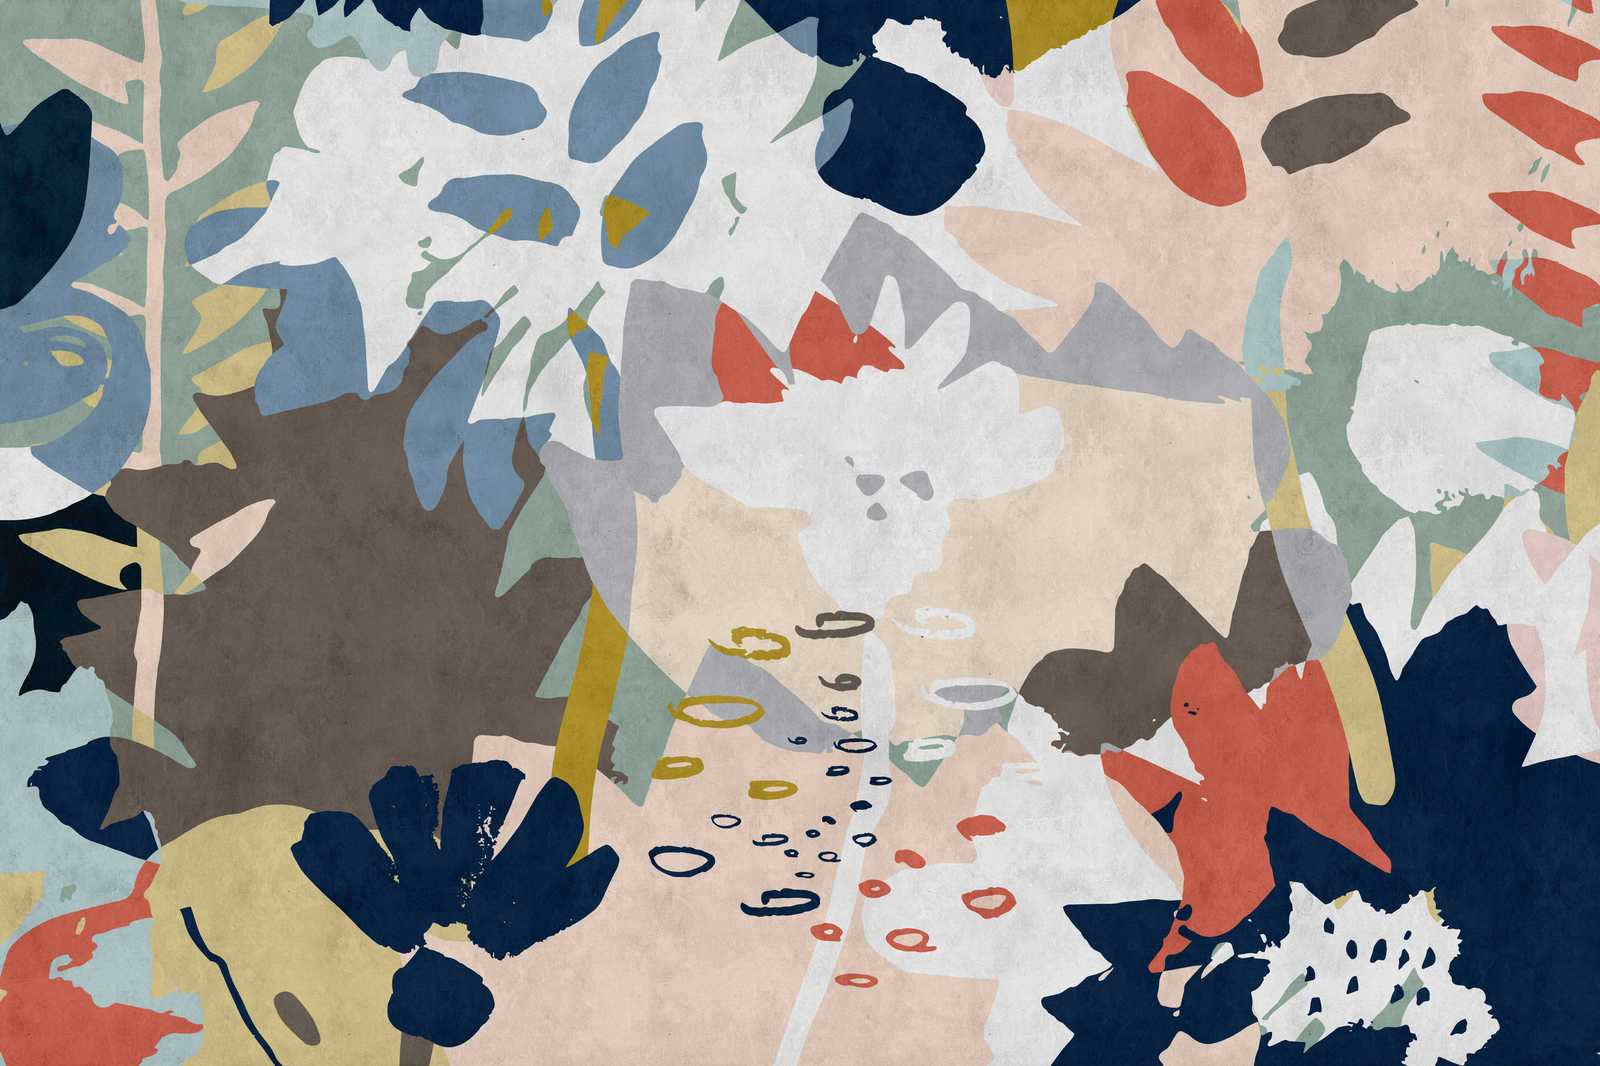             Collage floral 4 - Pintura sobre lienzo con motivo de hojas de colores - estructura de papel secante - 0,90 m x 0,60 m
        